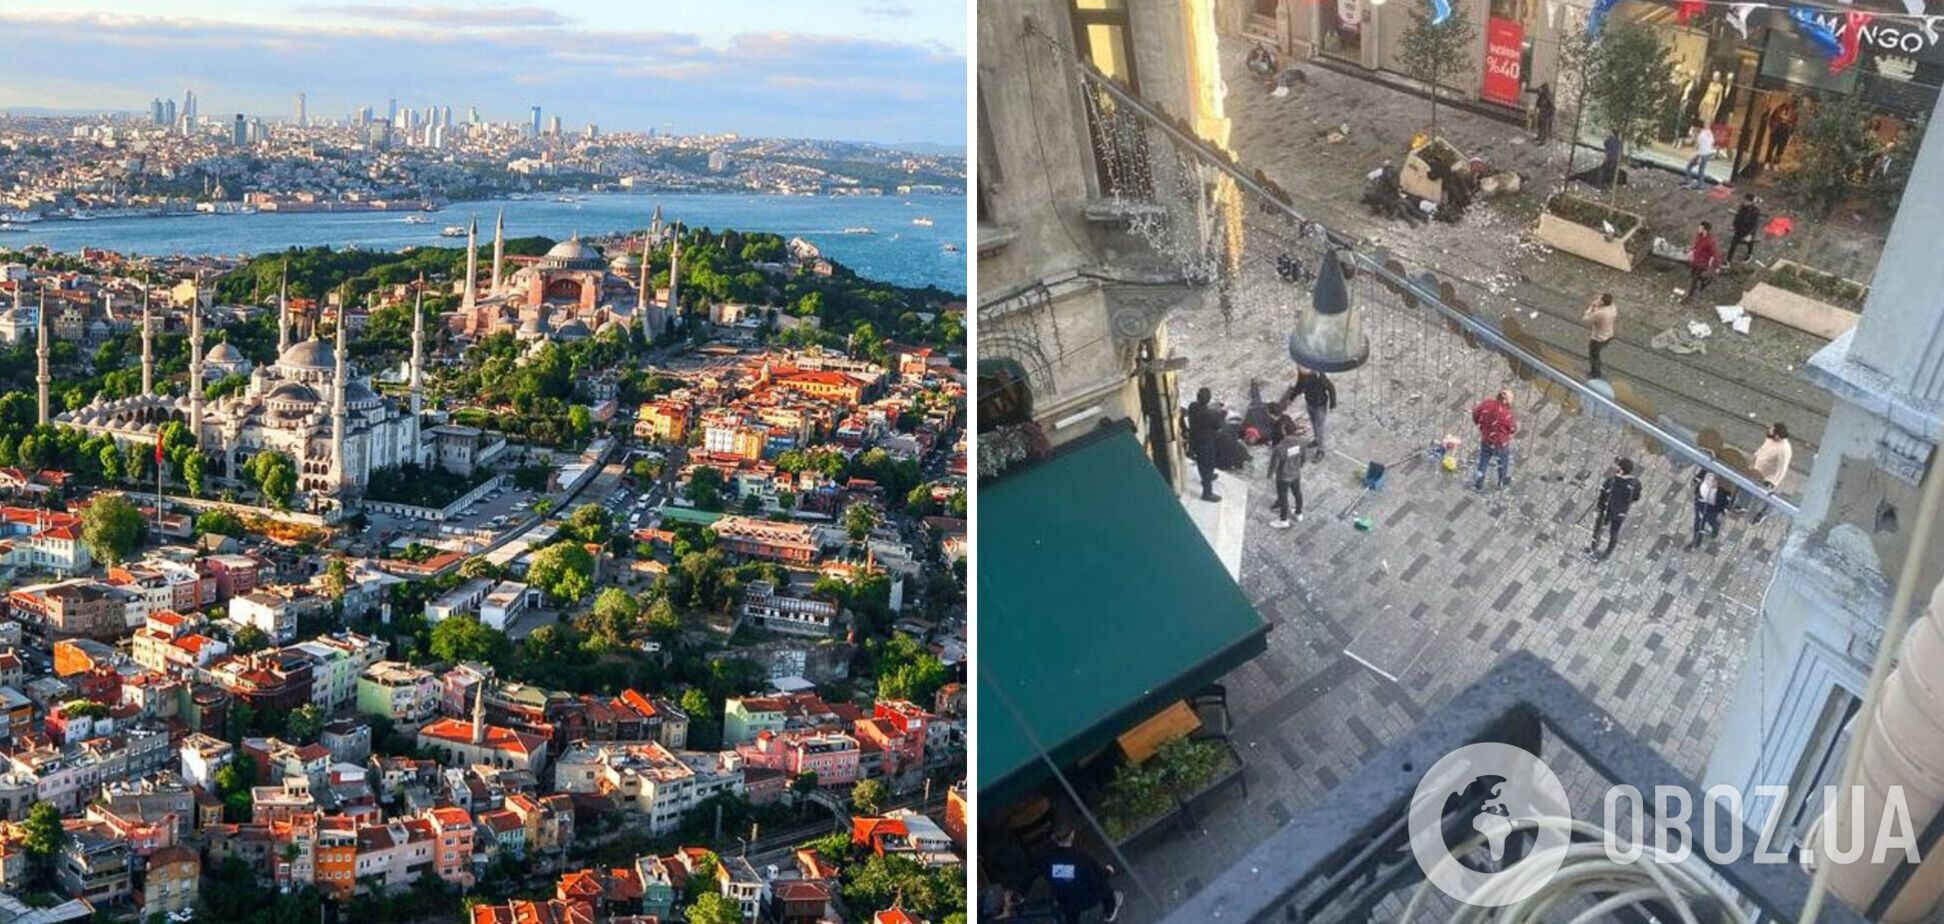 У центрі Стамбула стався теракт неподалік від консульства РФ: 6 загиблих та 53 поранених. Фото і відео